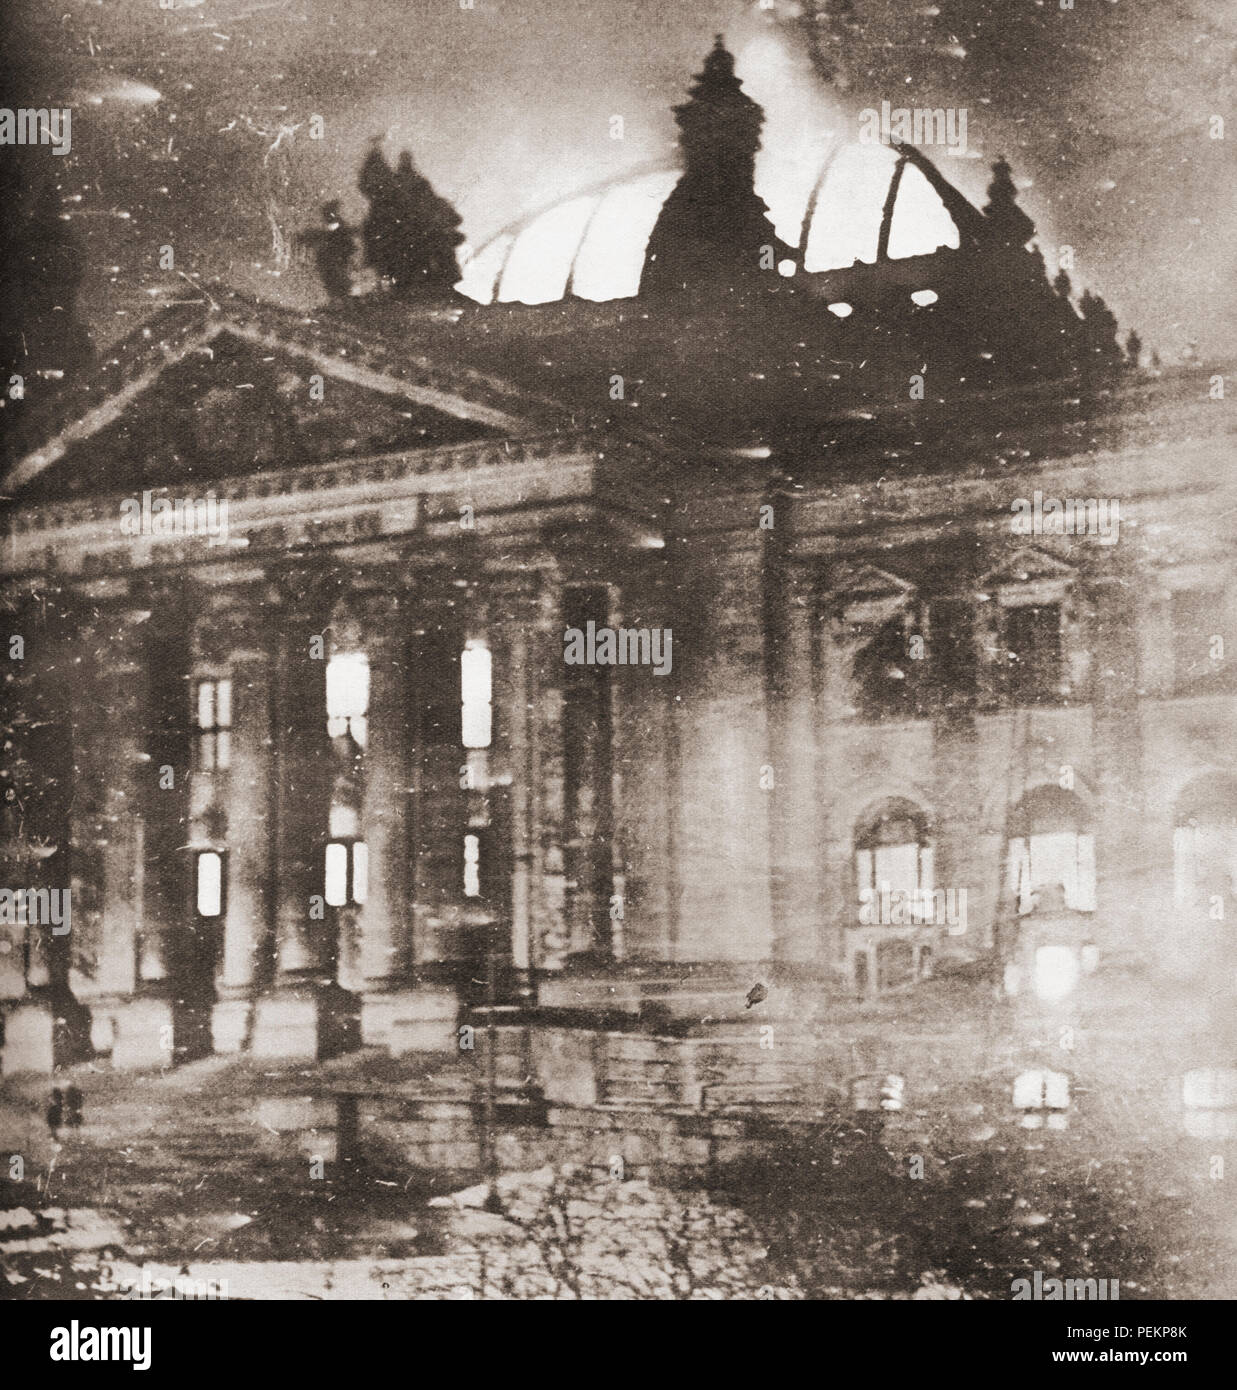 Der Reichstag Feuer, einen Brandanschlag auf das Reichstagsgebäude, Berlin am 27. Februar 1933. Von diesen enormen Jahre, veröffentlicht 1938. Stockfoto